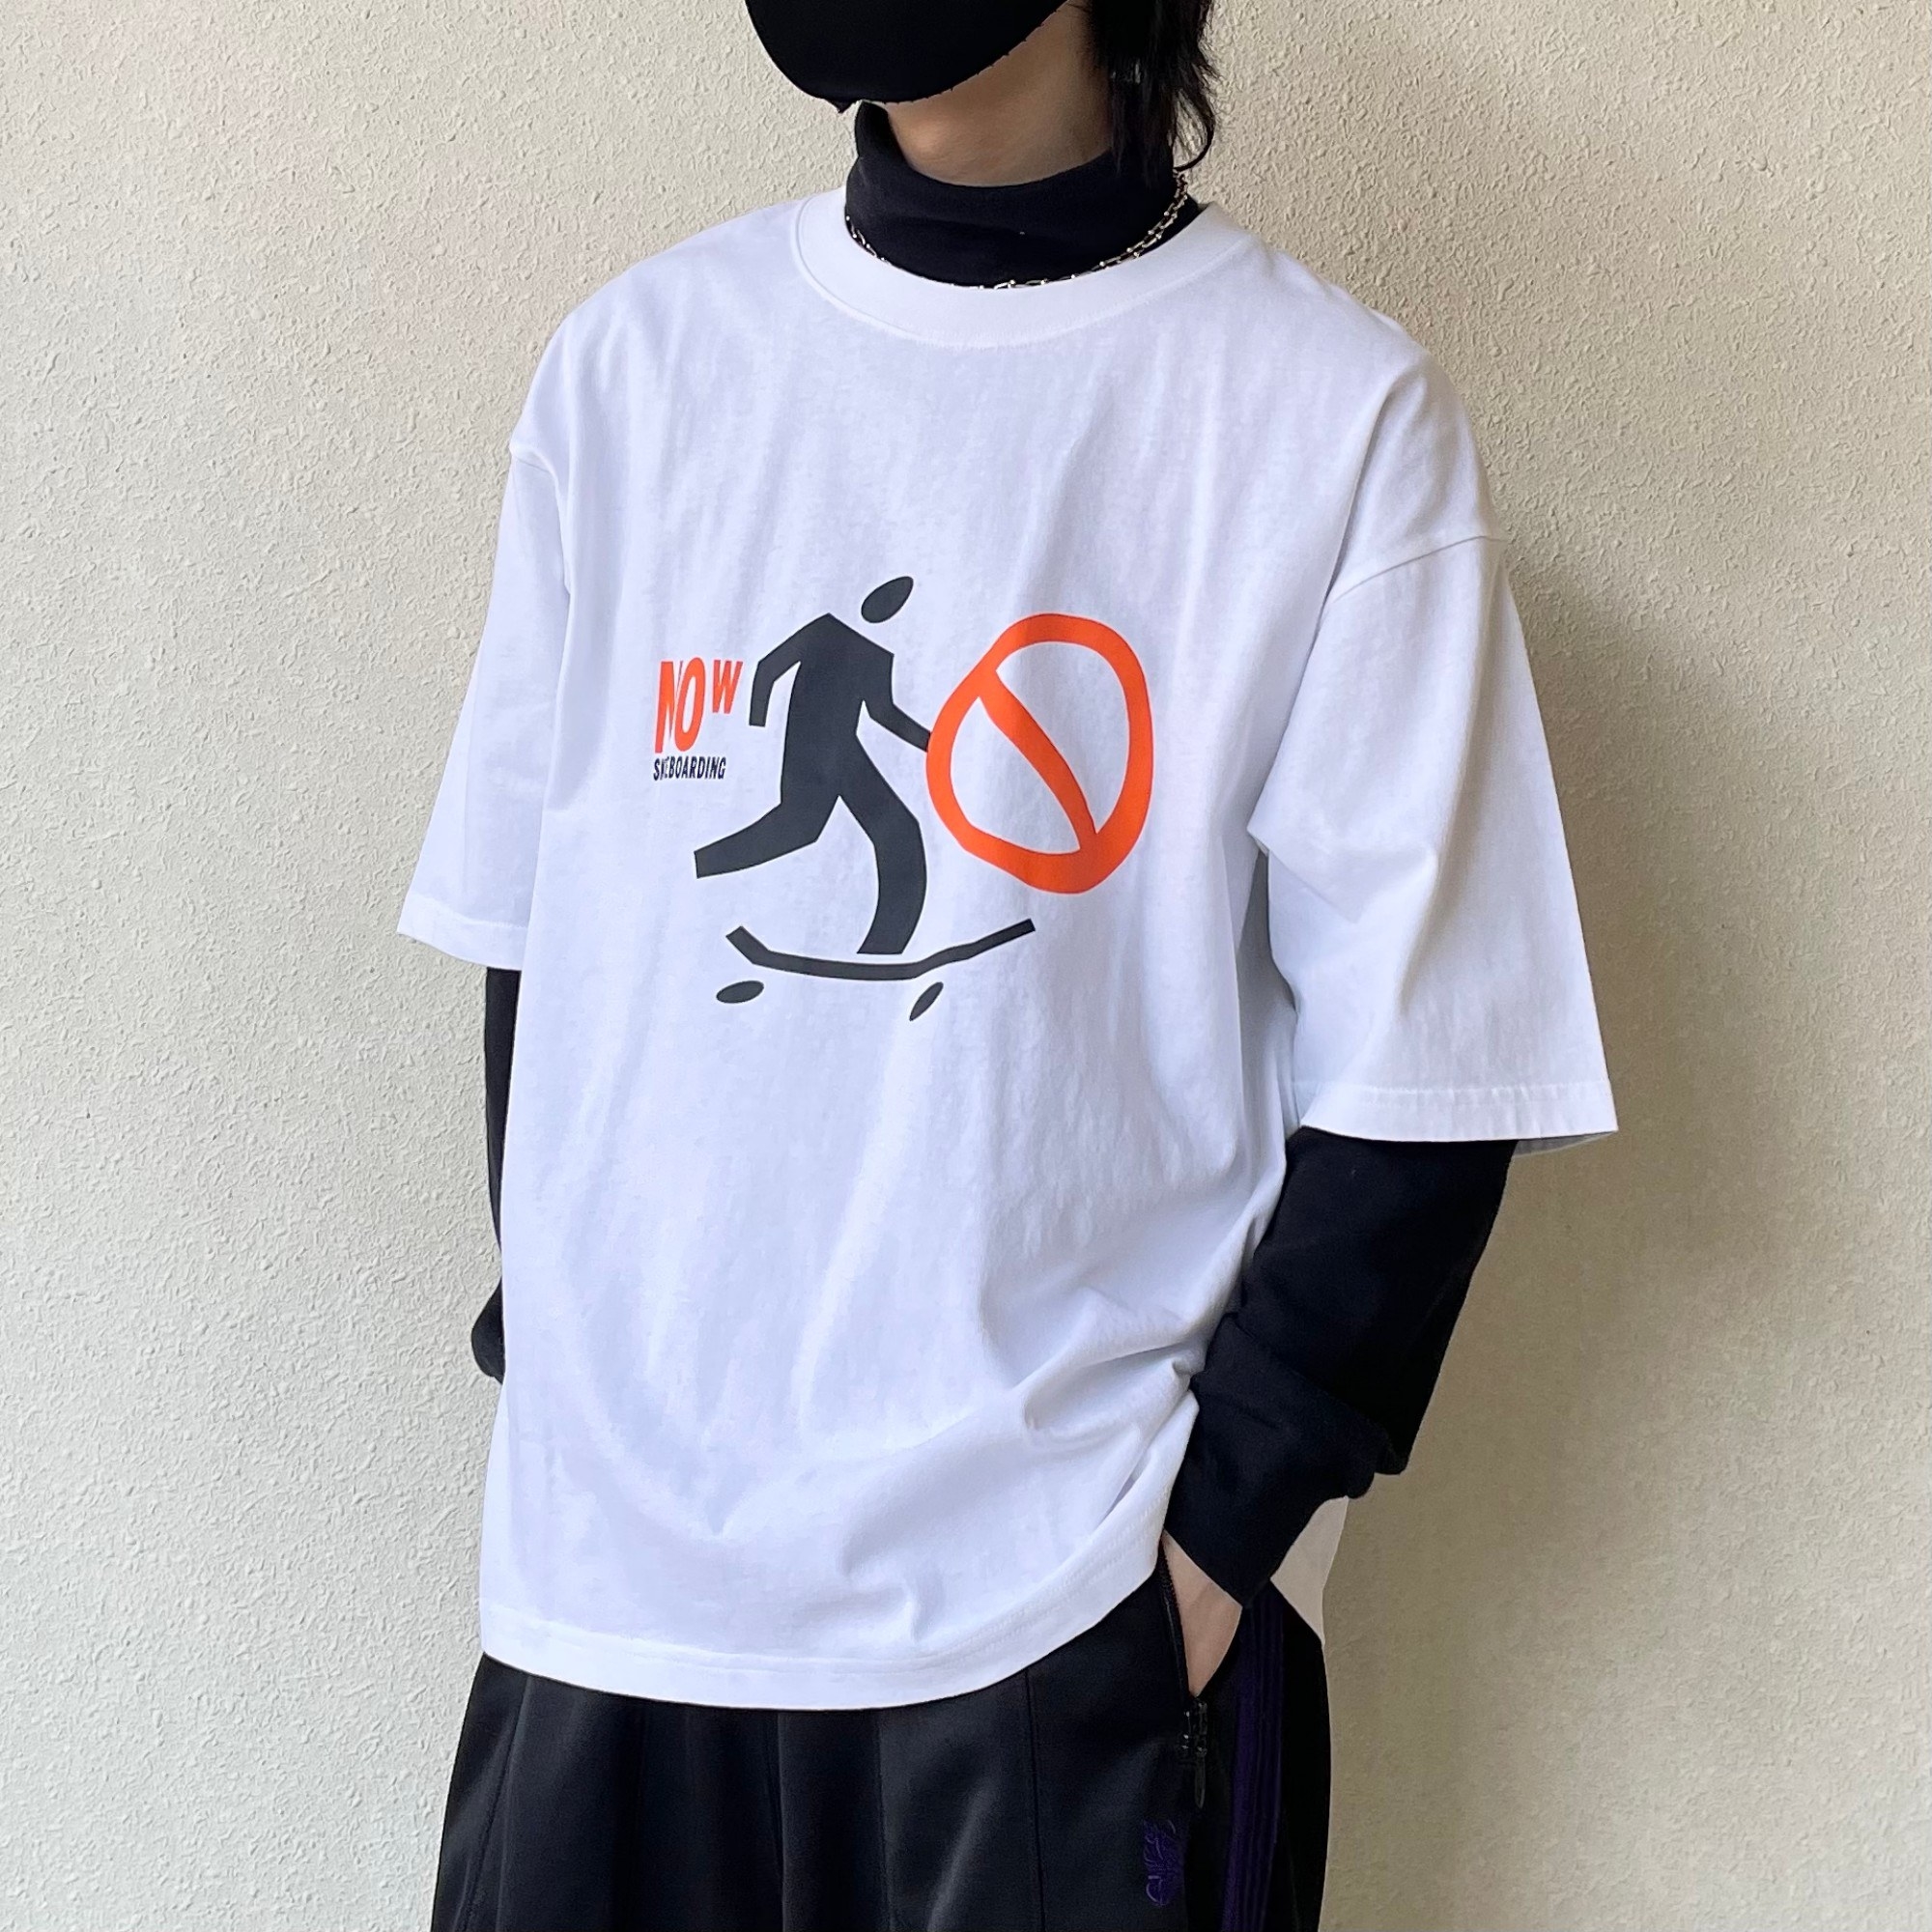 UNIQLO（ユニクロ）のおすすめのメンズアイテム「スケーターコレクション UT グラフィックTシャツ 上野伸平（5分袖・ワイドフィット）」